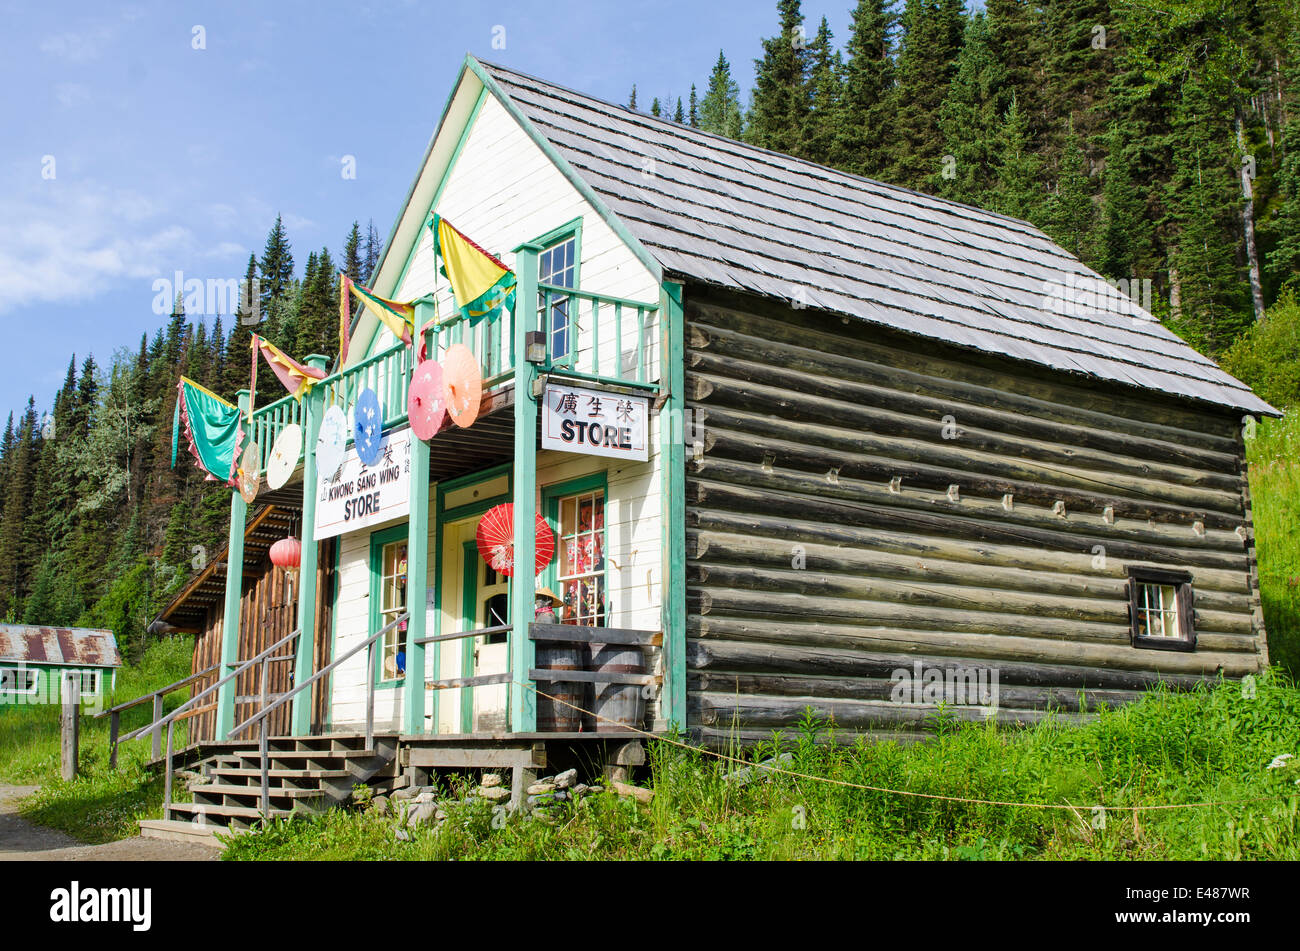 Gemischtwarenladen Holzgebäude Blockhaus Haupt Straße historische alte gold Rush Stadt Barkersville, British Columbia, Kanada. Stockfoto